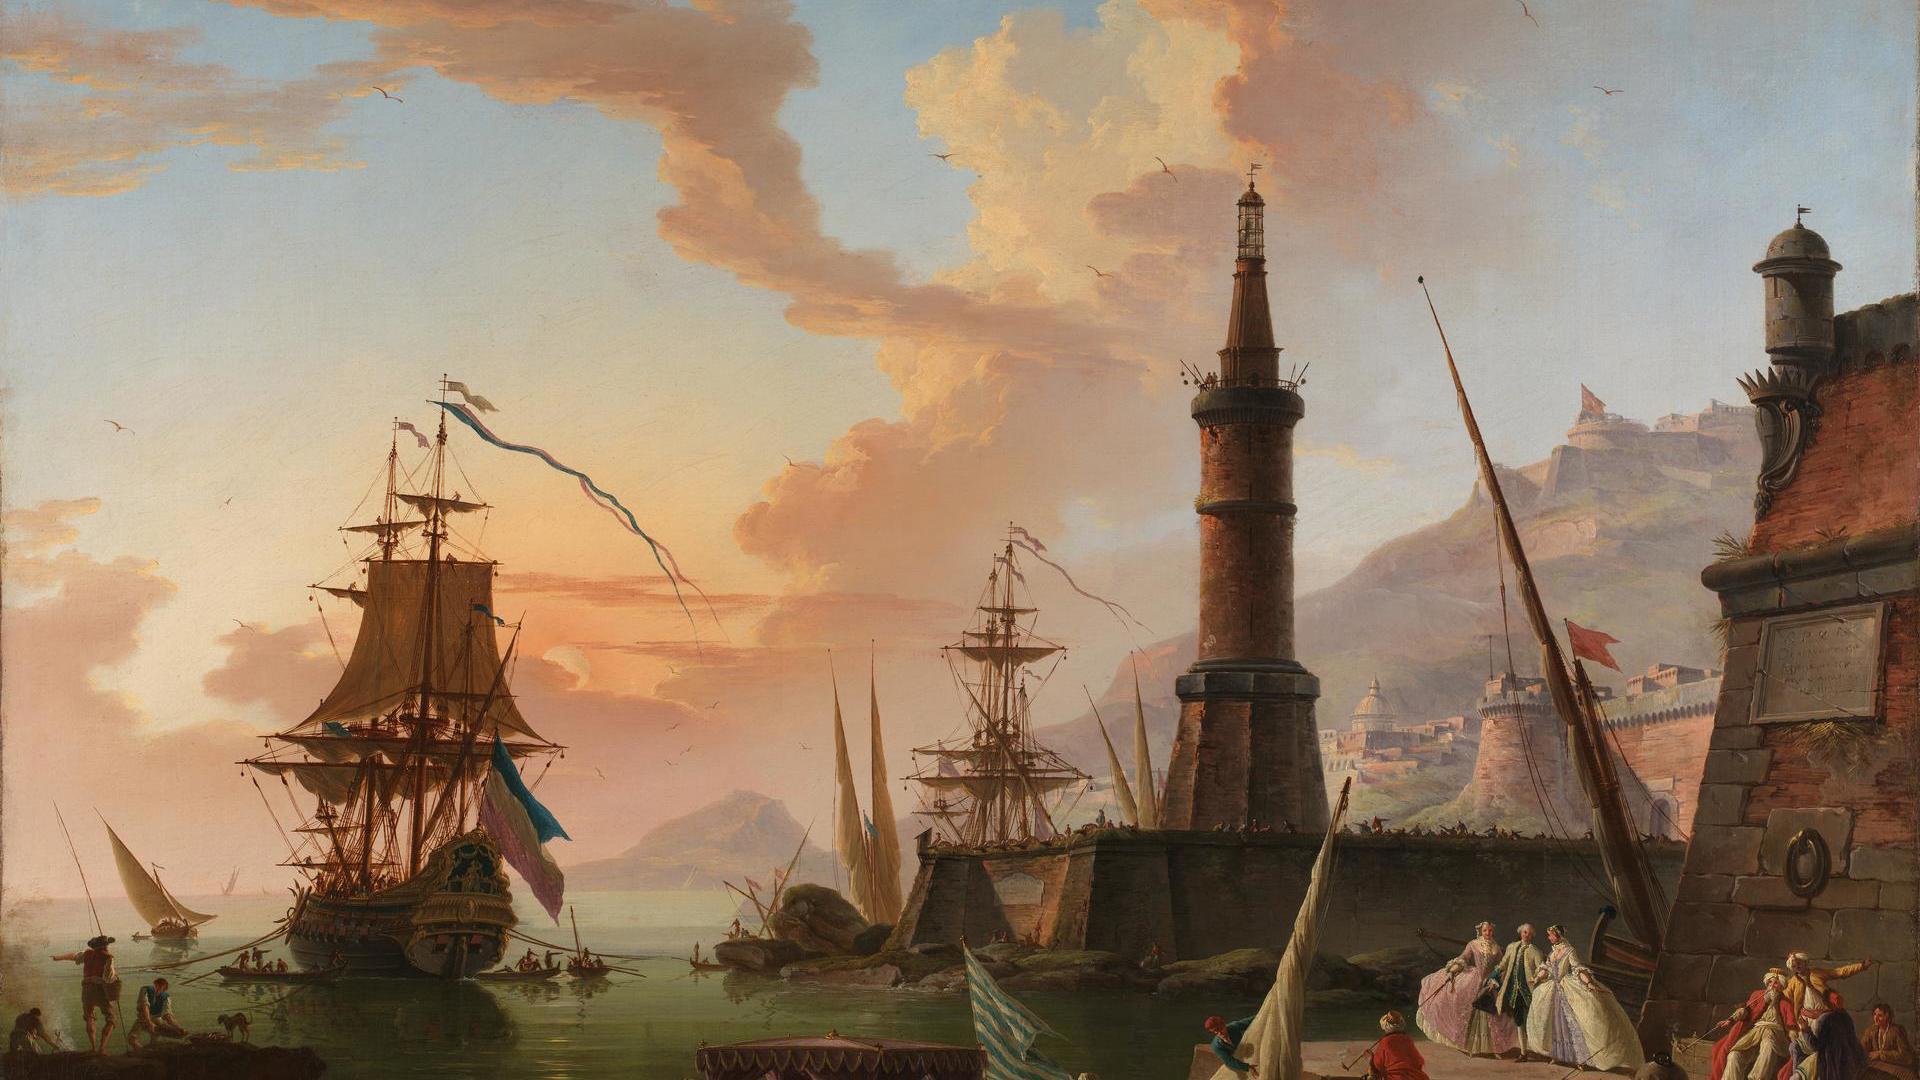 A Seaport by Charles-François de Lacroix